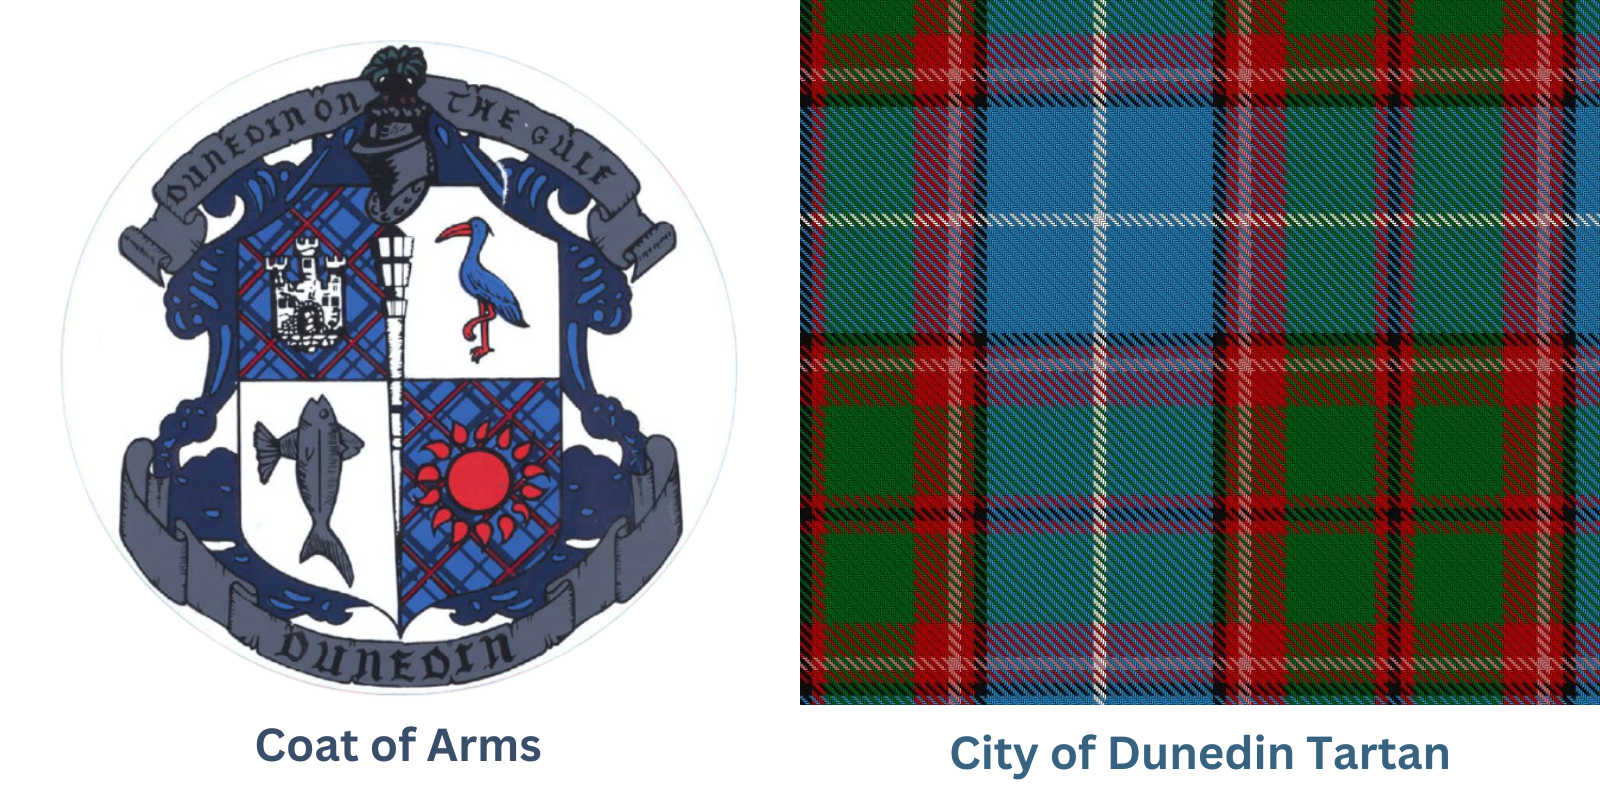 City of Dunedin Tartan and Coat of Arms